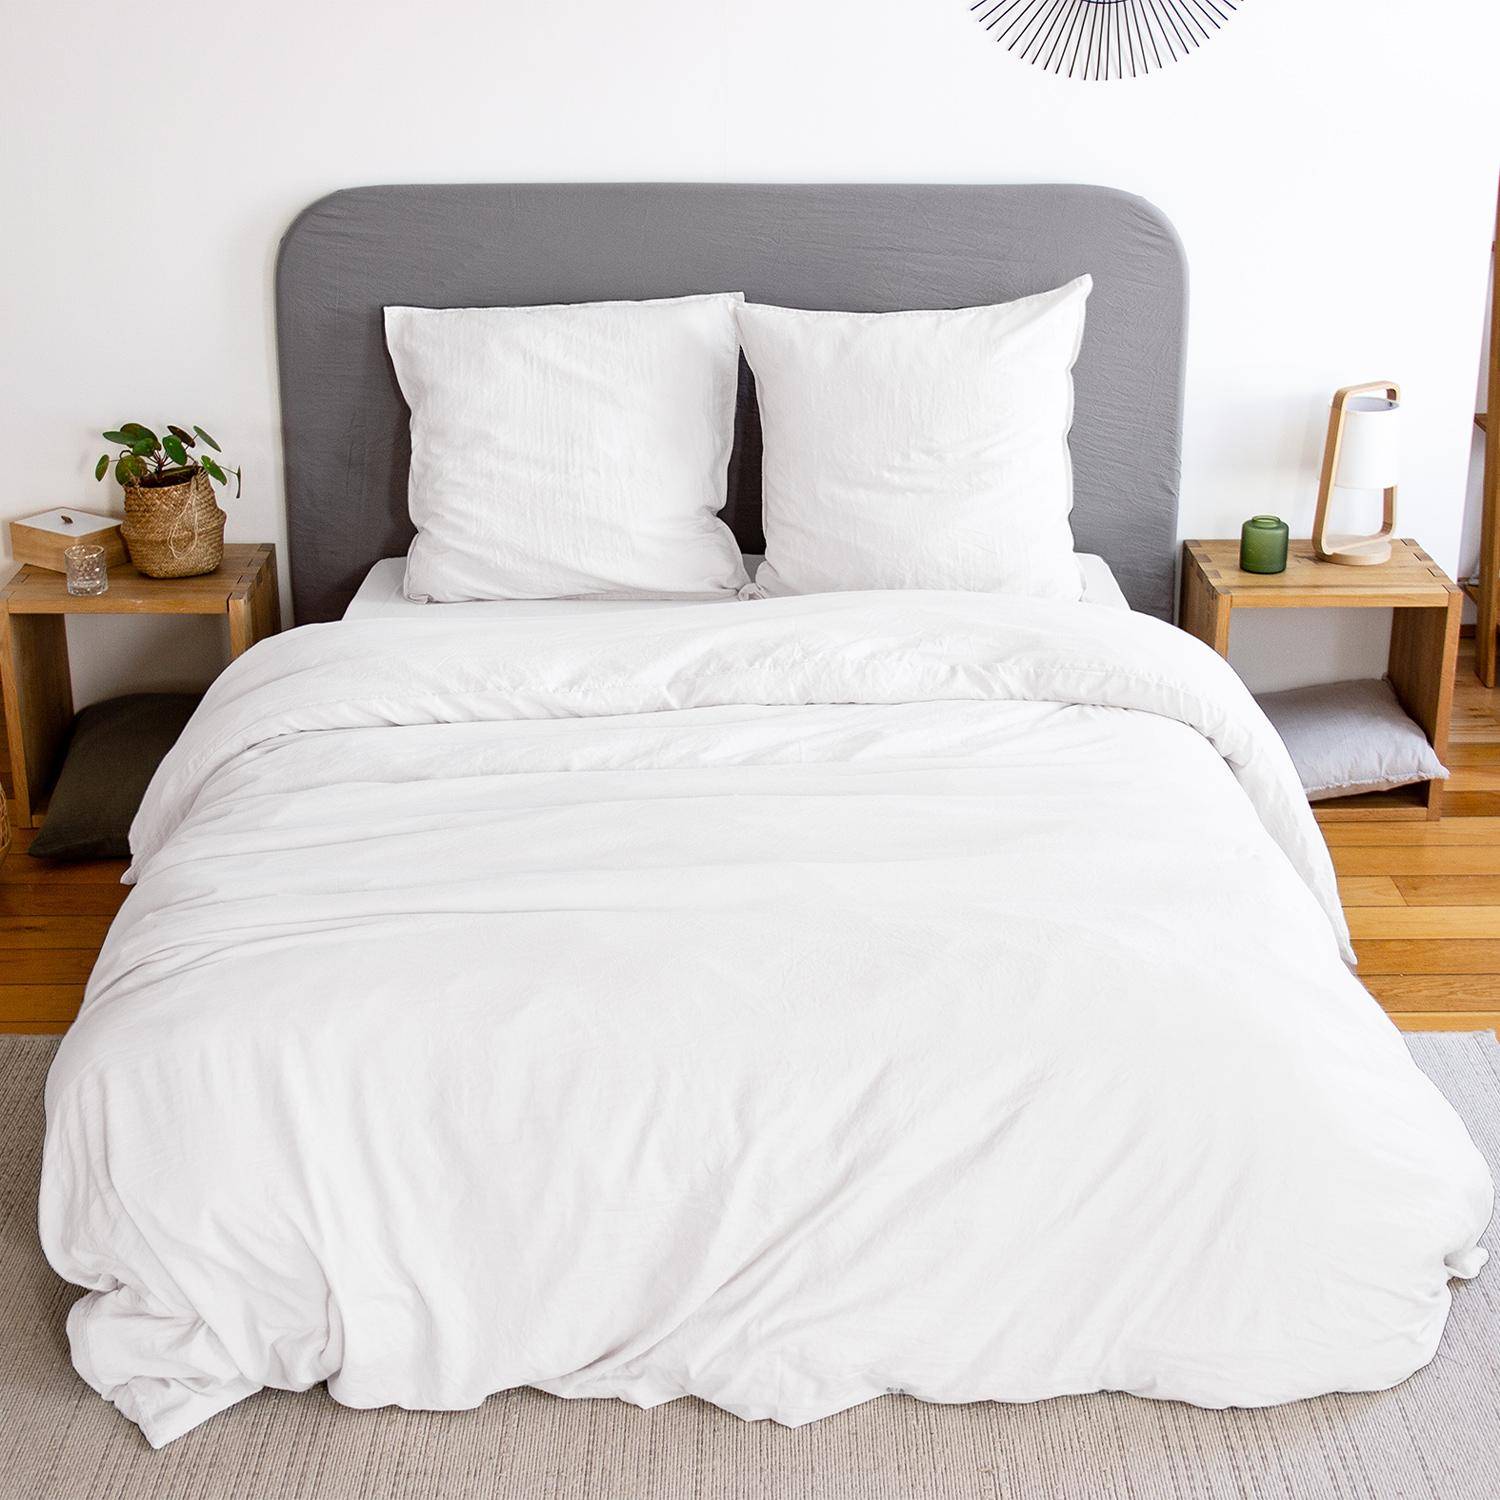 Bettwäsche-Set aus vorgewaschener Mikrofaser in weiß 240 x 220 cm für Doppelbetten, 1 Bettbezug und 2 Kissenbezüge,sweeek,Photo1